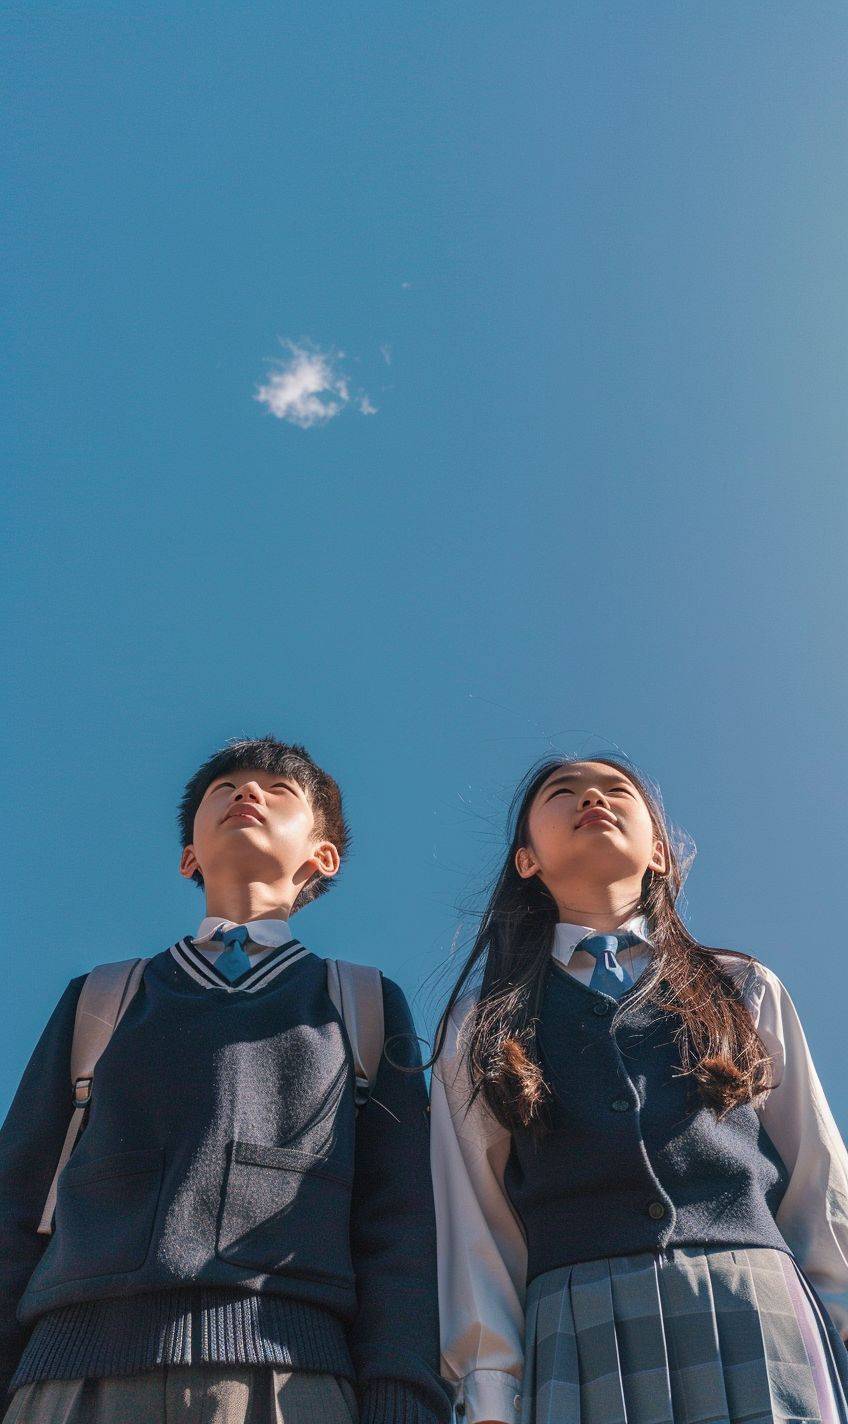 中国の高校生2人、男子と女子、制服を着て、晴れた空の下で空を見上げる、広角写真、広告ポートレート写真、高品質